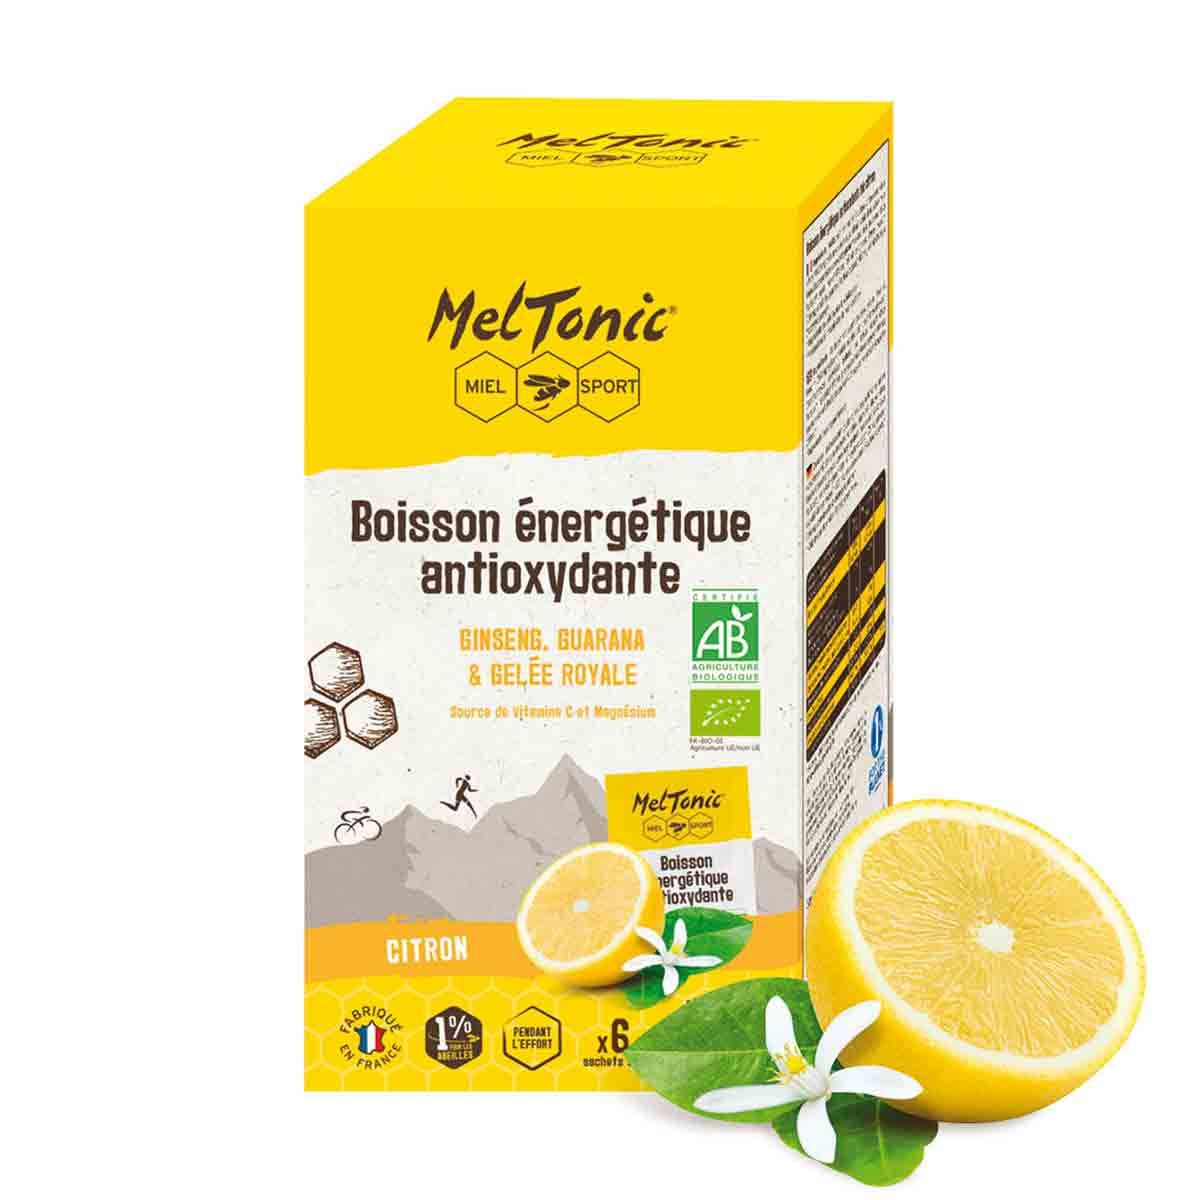 Boisson énergétique antioxydante bio Meltonic x 6 sticks - Citron